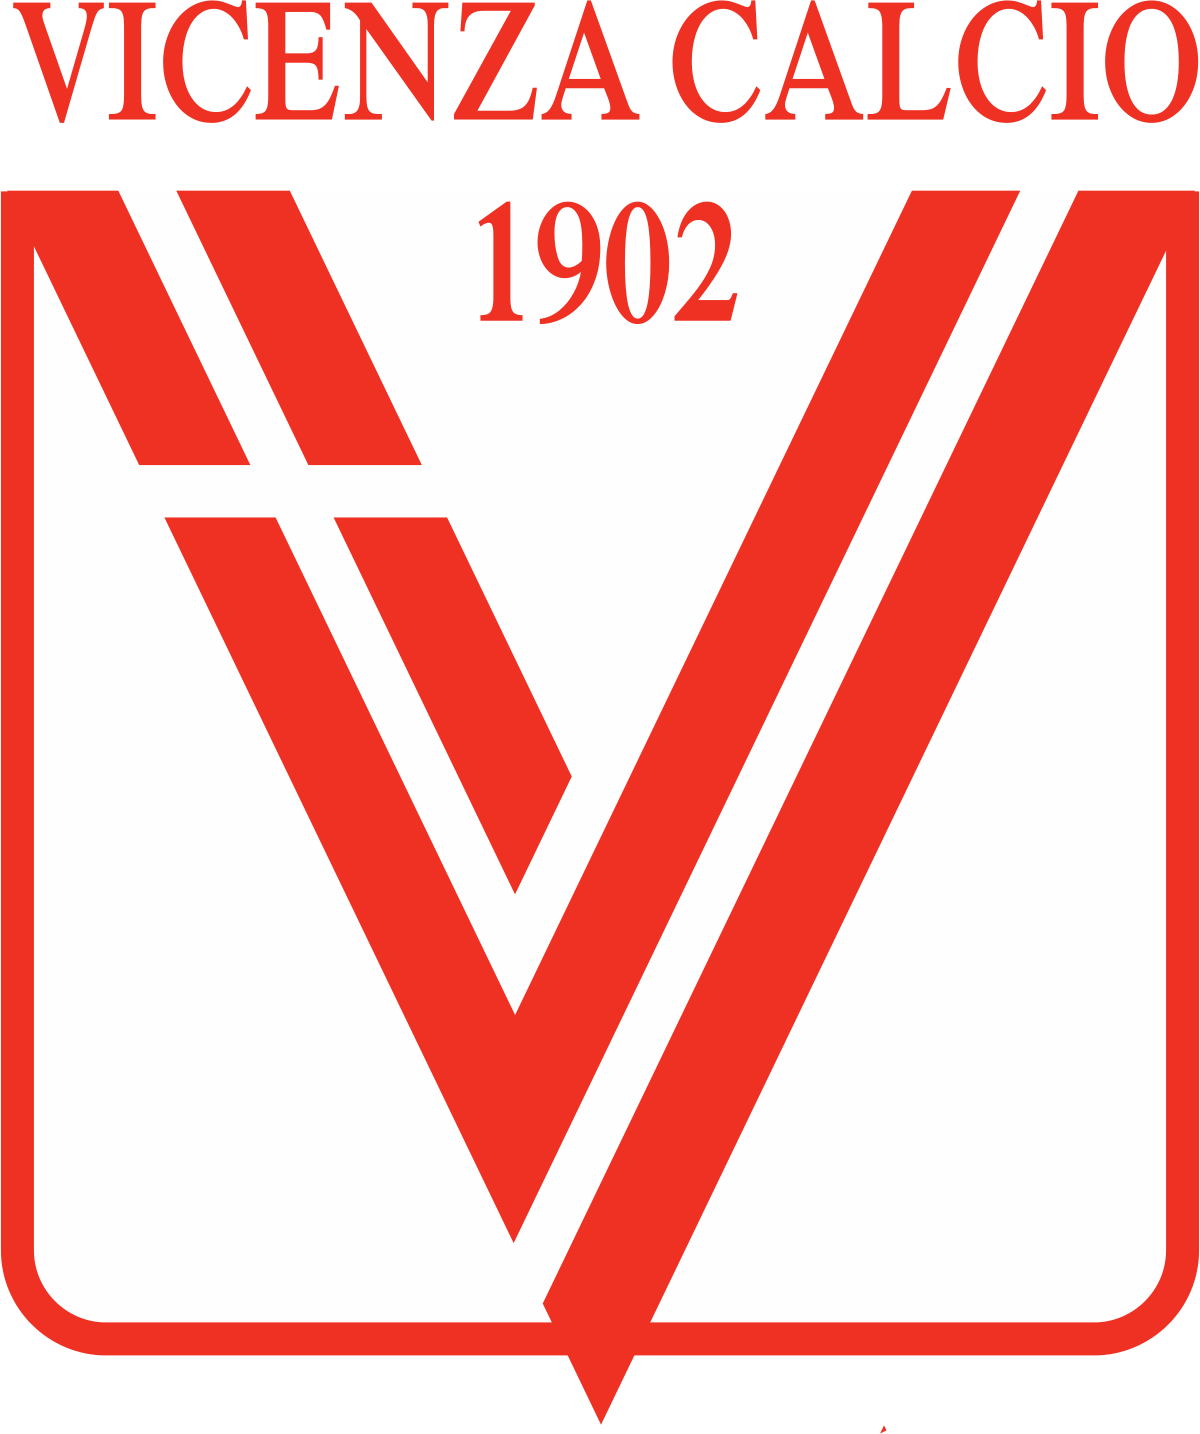 Resultado de imagen de Vicenza calcio